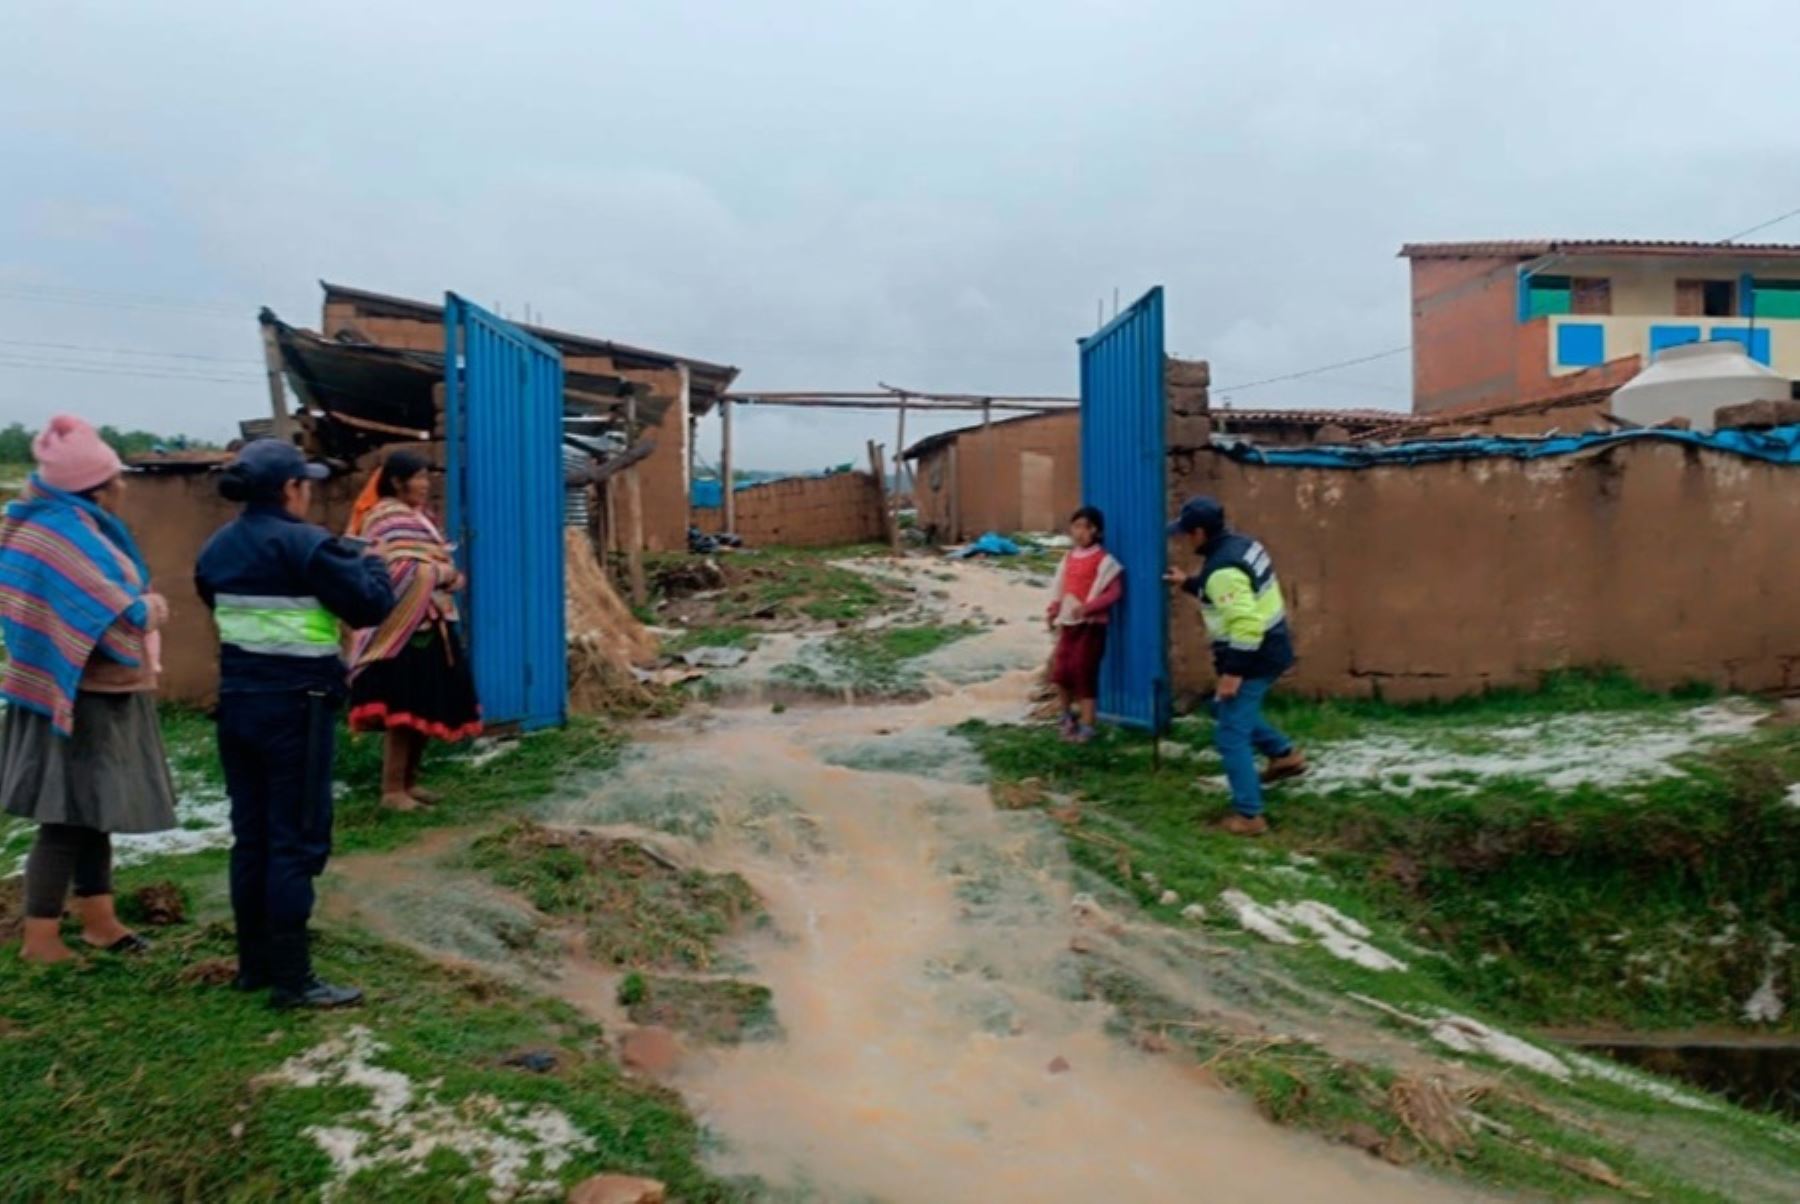 Al menos 40 familias de las comunidades campesinas de Ccatccapampa y Querora, del distrito de Ccatcca, provincia de Quispicanchi, resultaron damnificadas, tras un intensa granizada y lluvia, informó el Centro de Operaciones de Emergencia Local